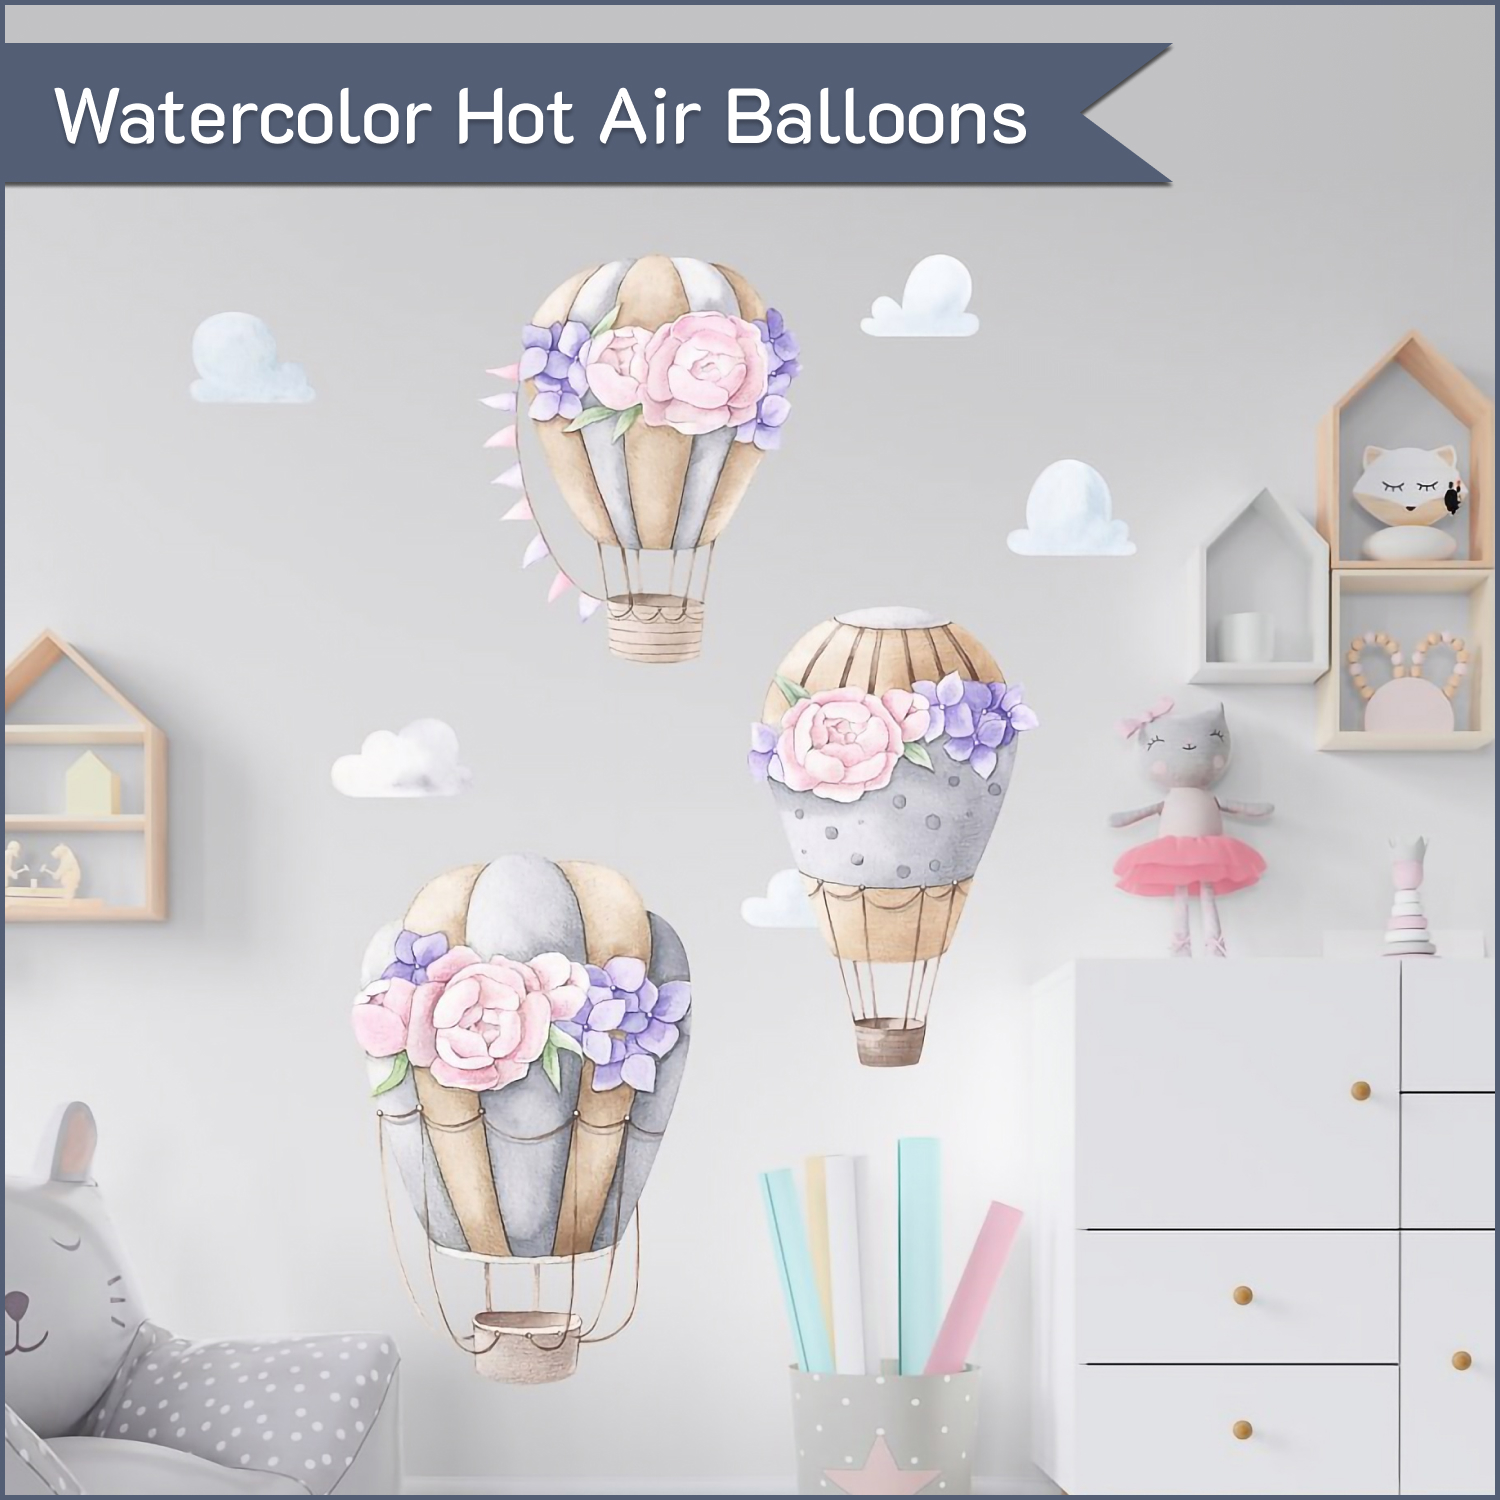 Watercolor hot air balloons.